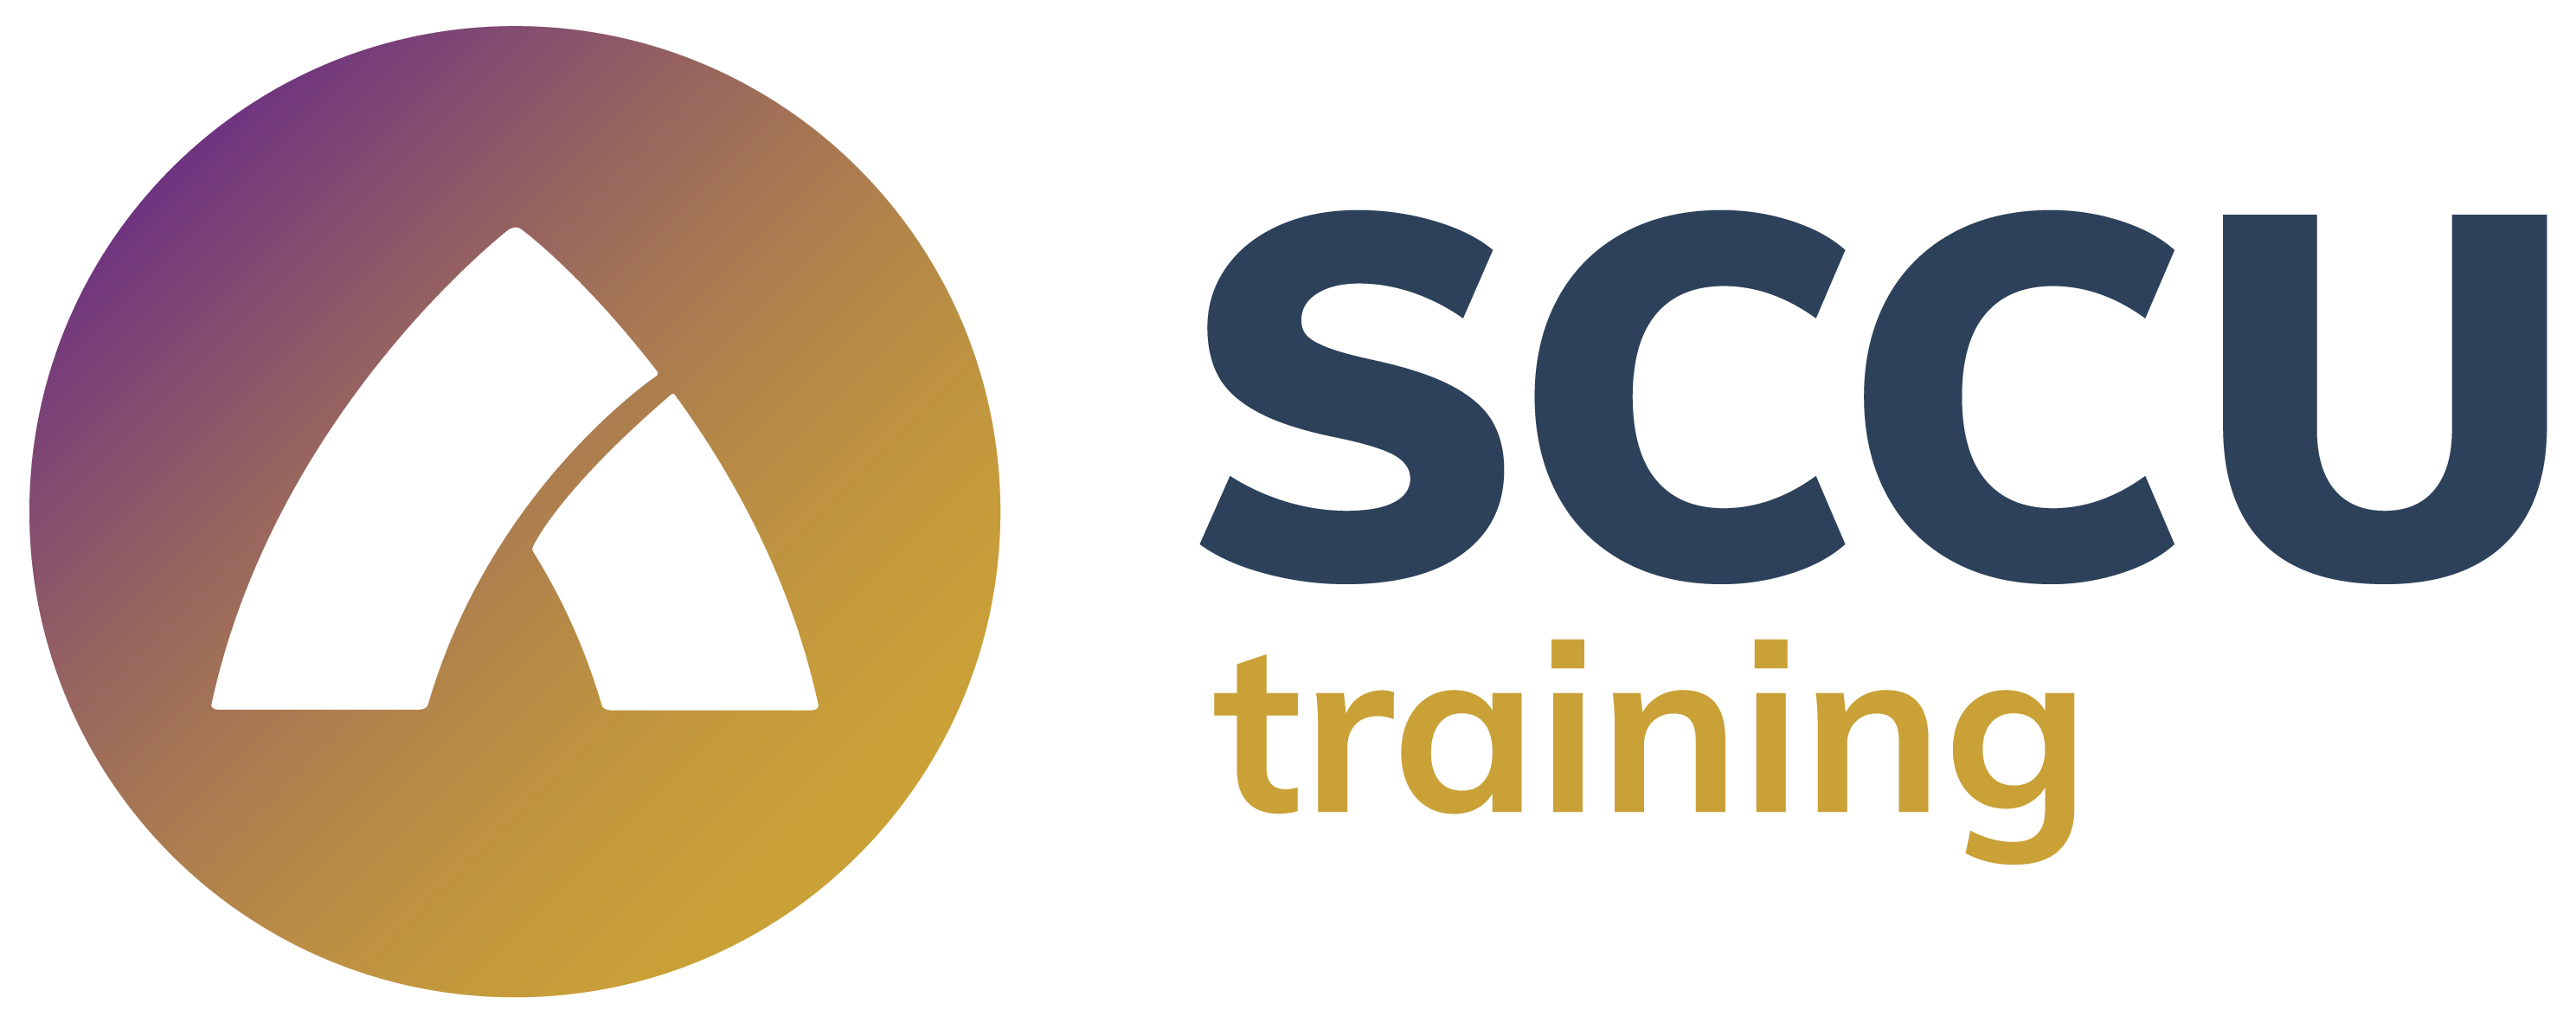 SCCU Training